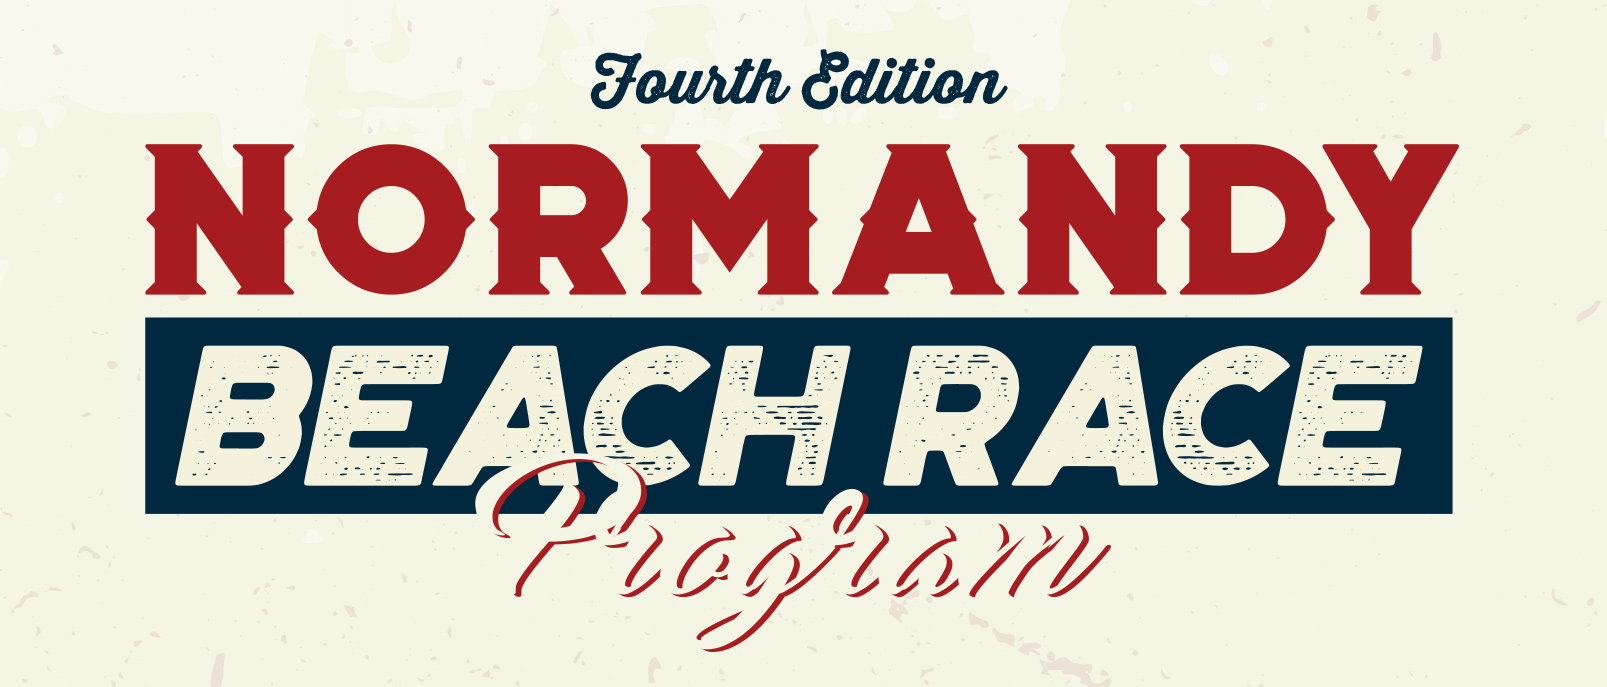 Normandy Beach Race 2023 Program header